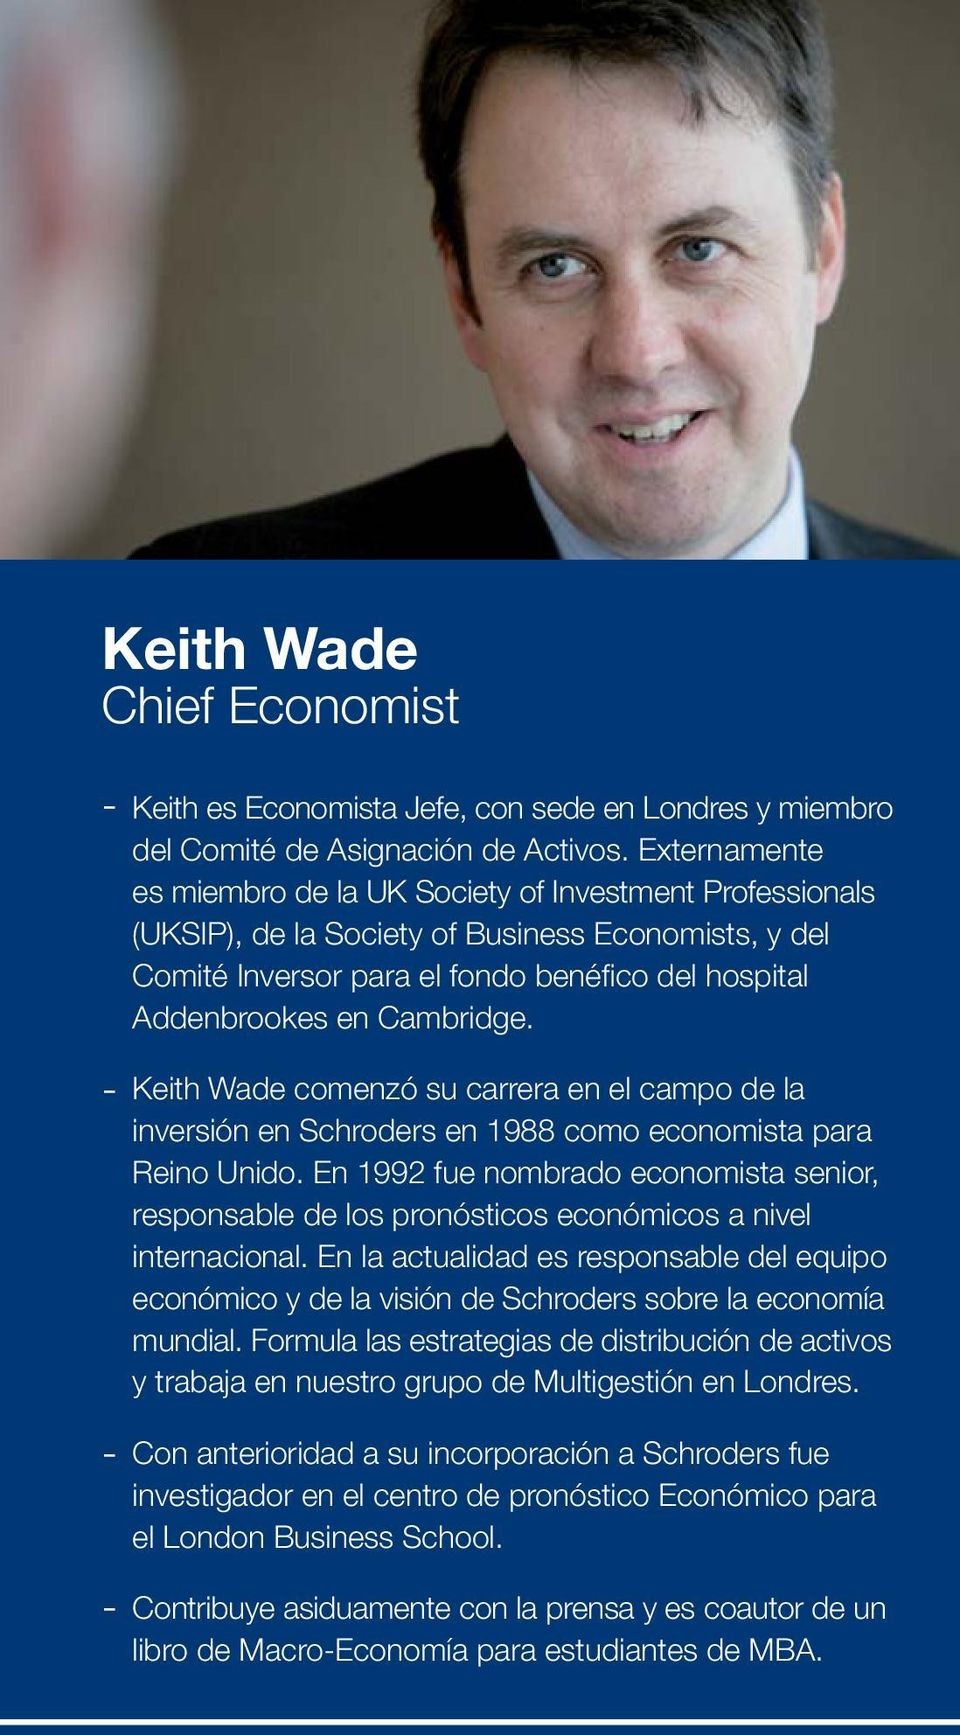 Cambridge. Keith Wade comenzó su carrera en el campo de la inversión en Schroders en 1988 como economista para Reino Unido.